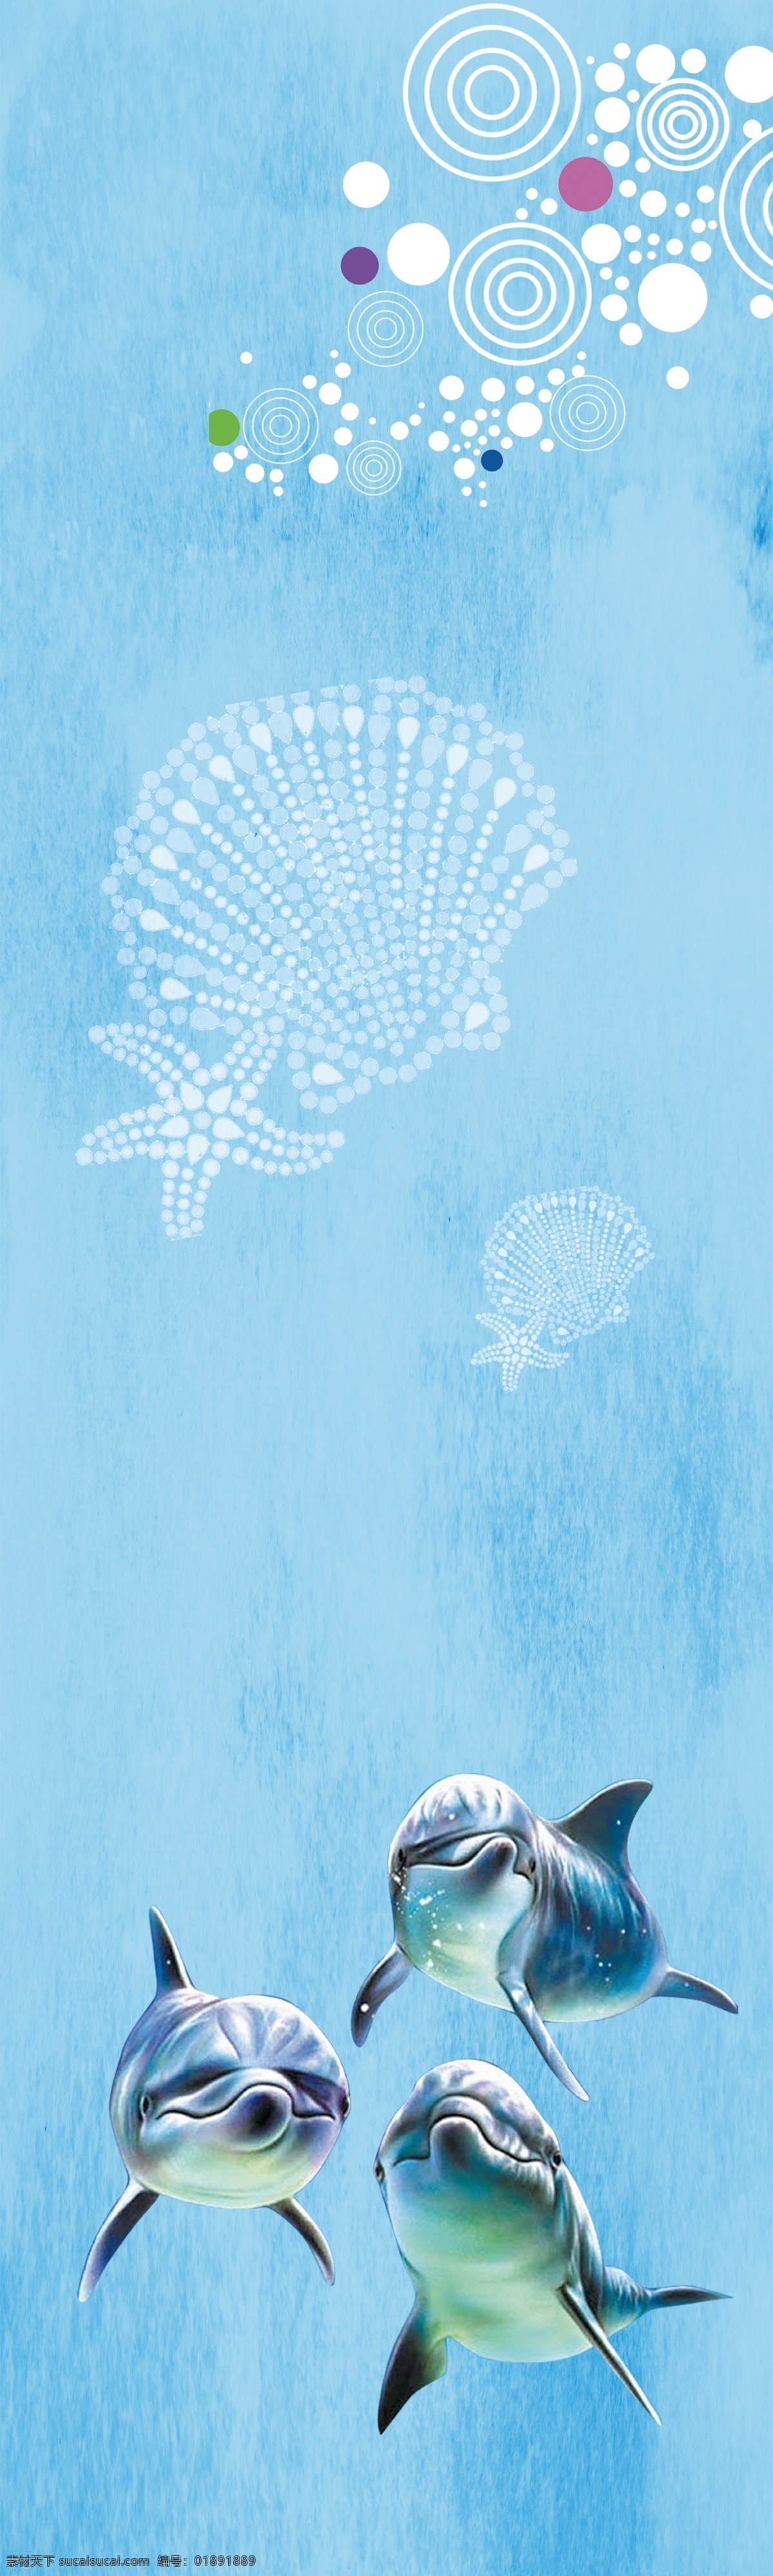 海洋馆 玻璃 装饰画 海豚 夏季 蓝色 水 设计玻璃橱窗 海底世界 海洋动物